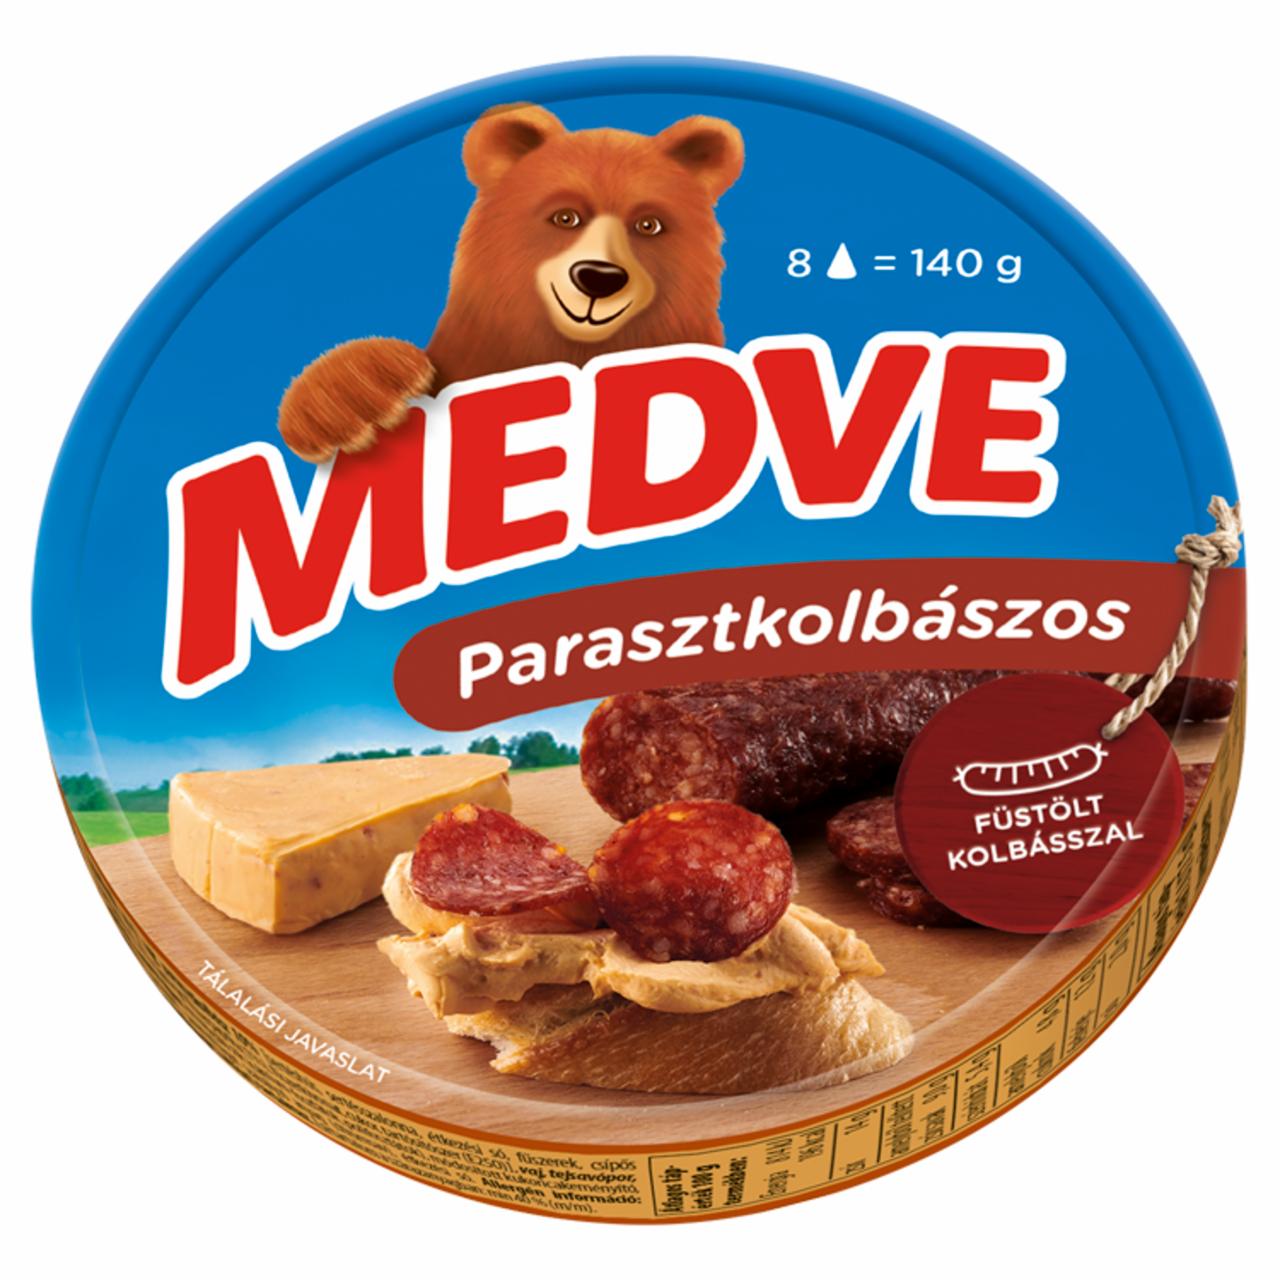 Képek - Medve parasztkolbászos kenhető, félzsíros ömlesztett sajt 8 x 17,5 g (140 g)